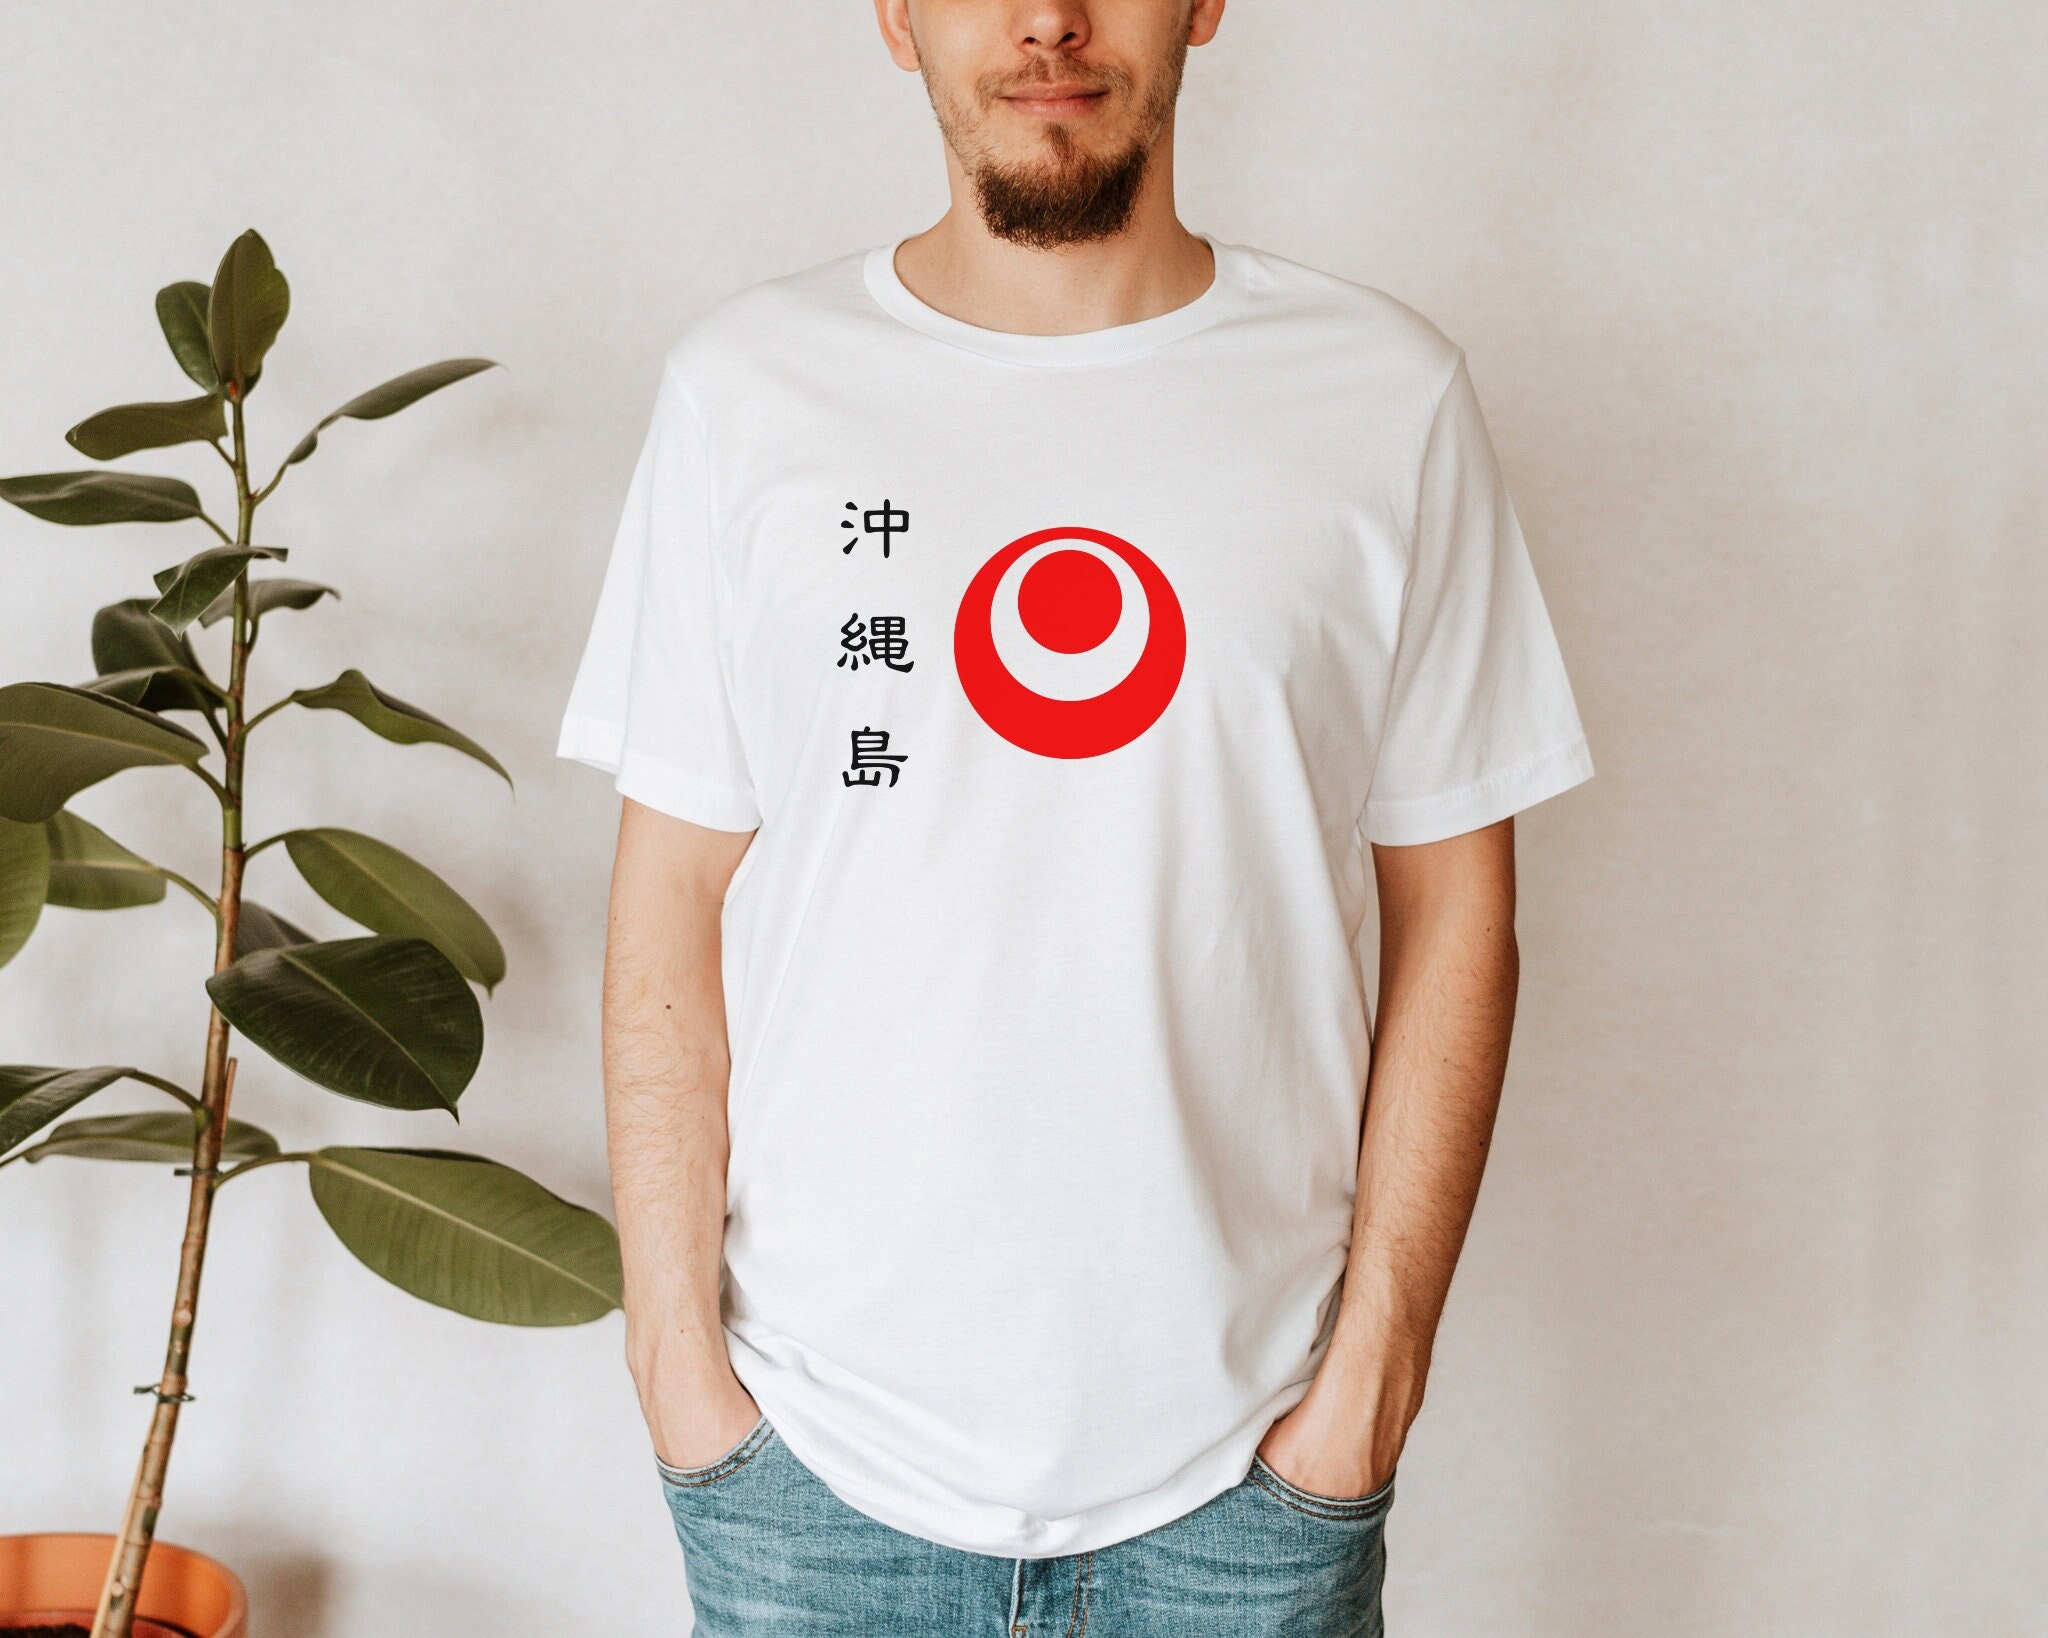 Nhl Seattle Kraken T-shirt : Target